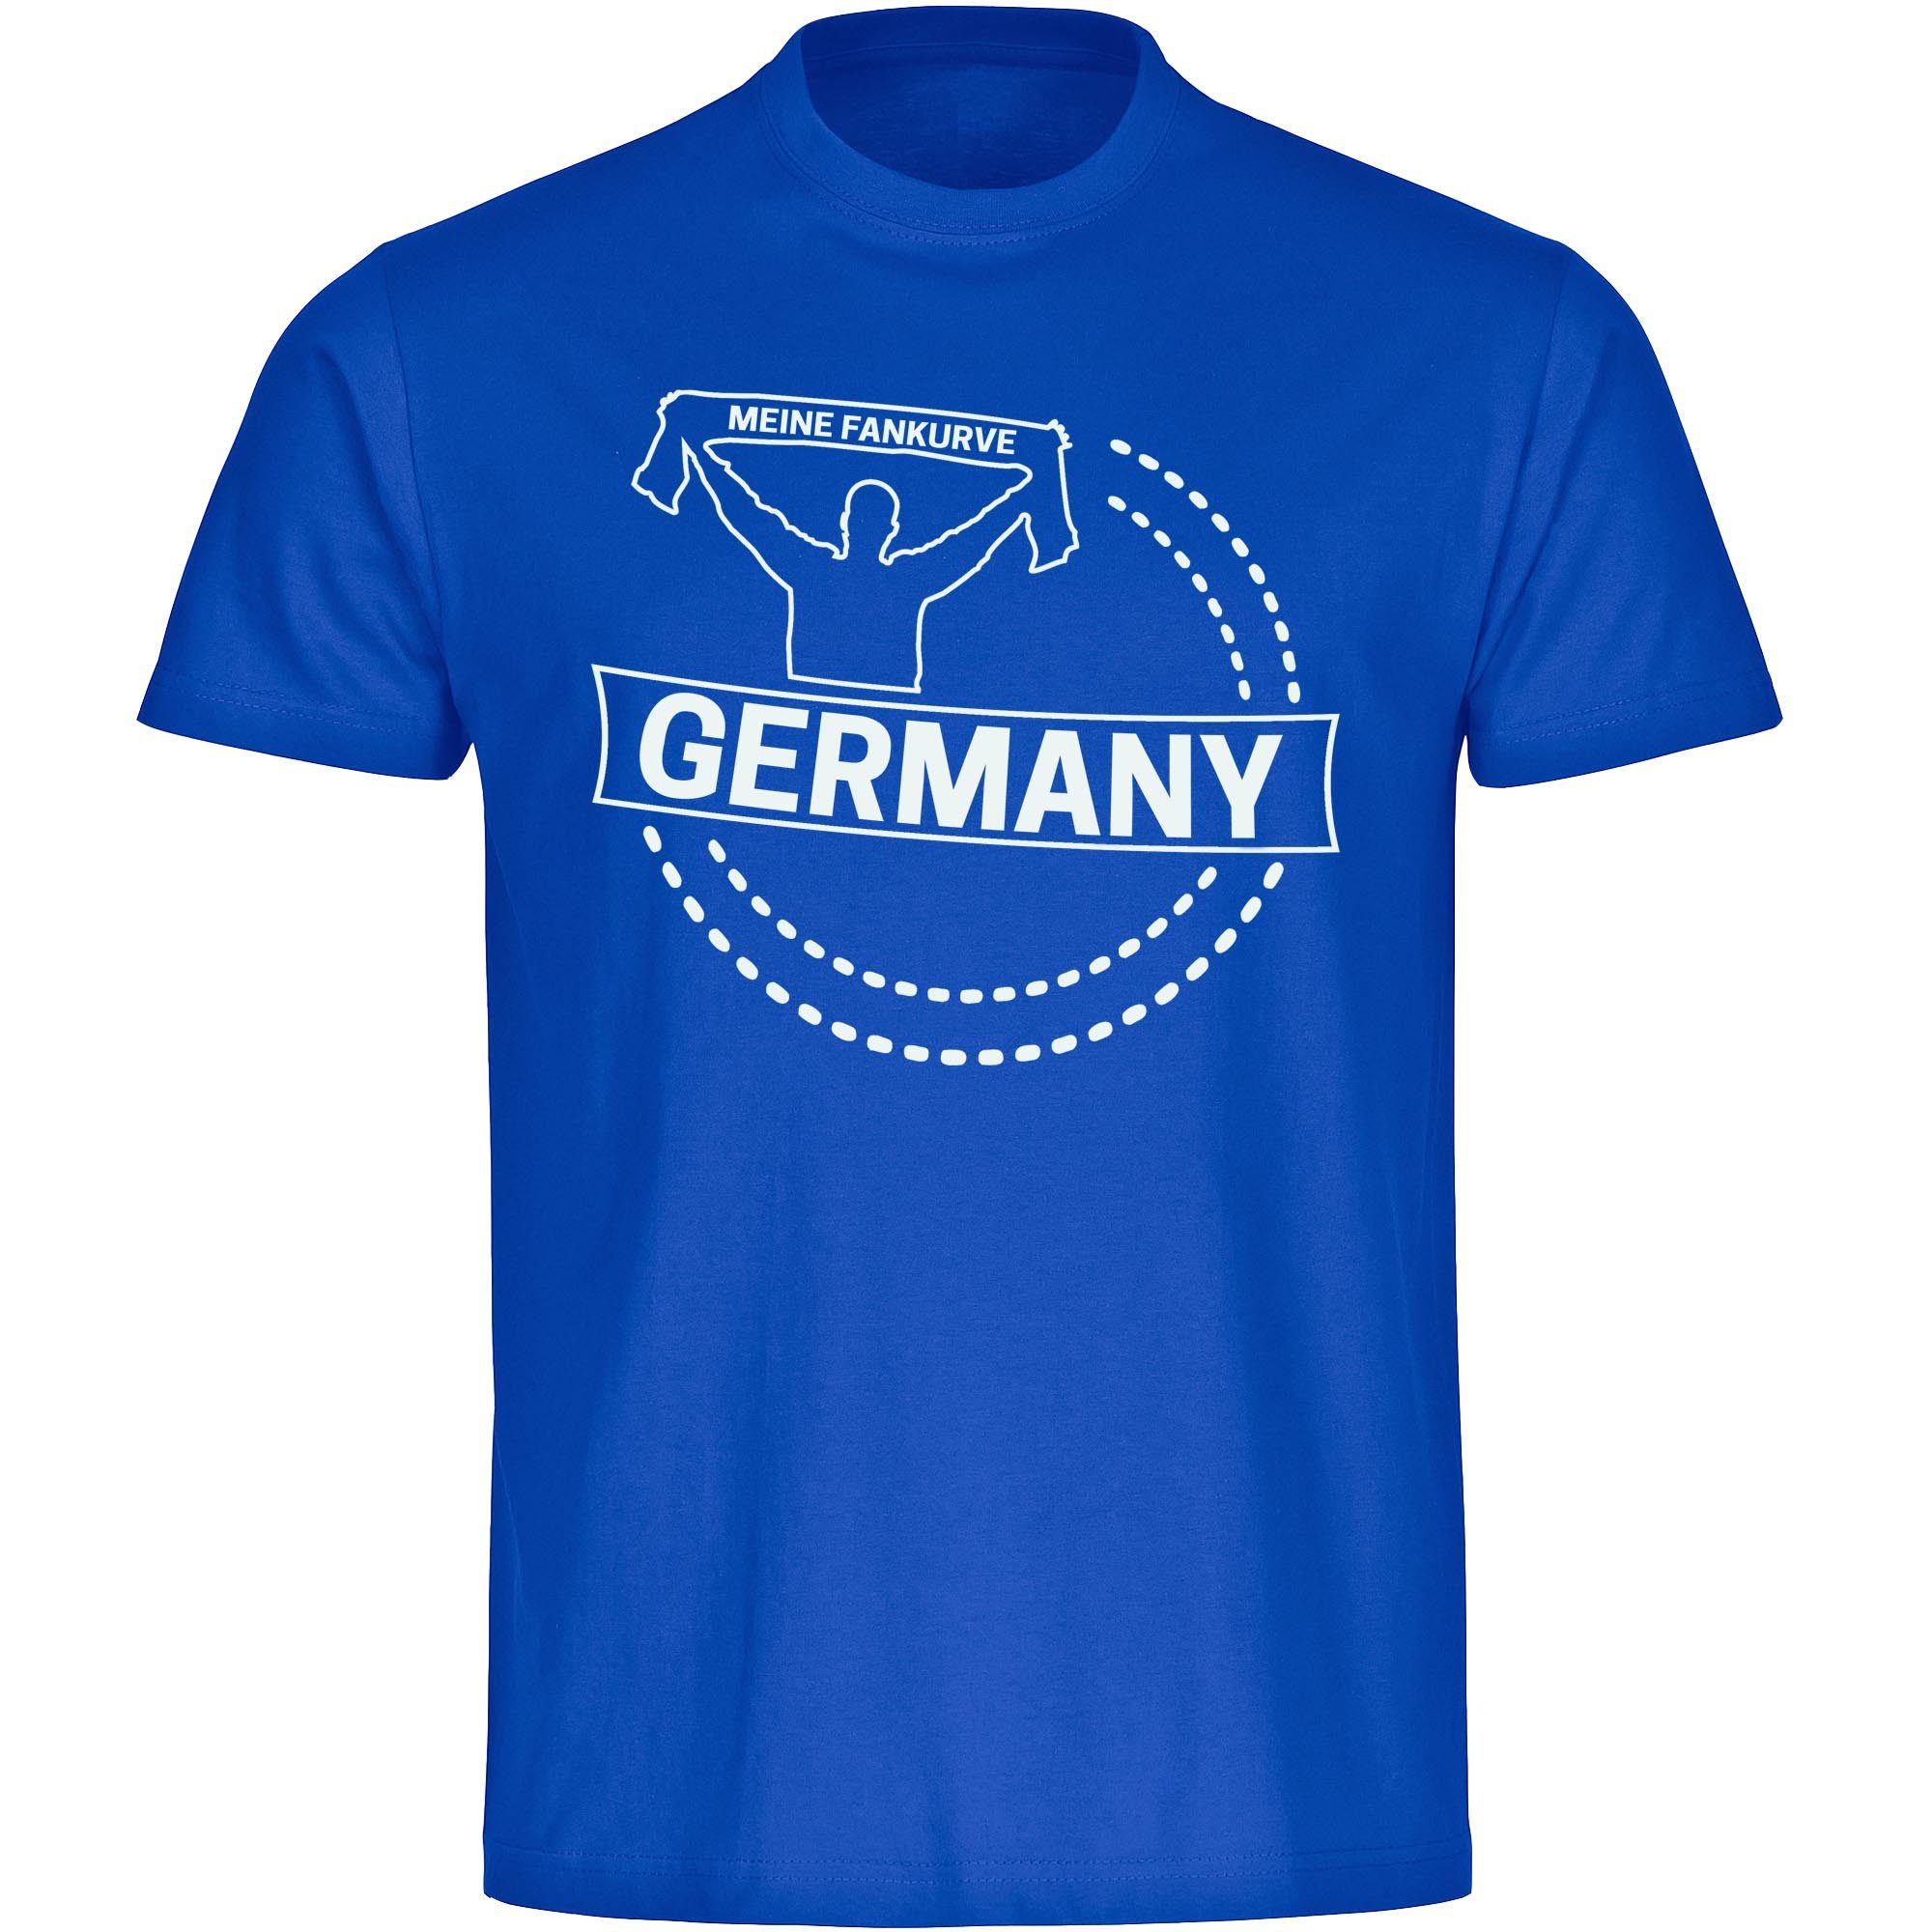 multifanshop T-Shirt Kinder Germany - Meine Fankurve - Boy Girl